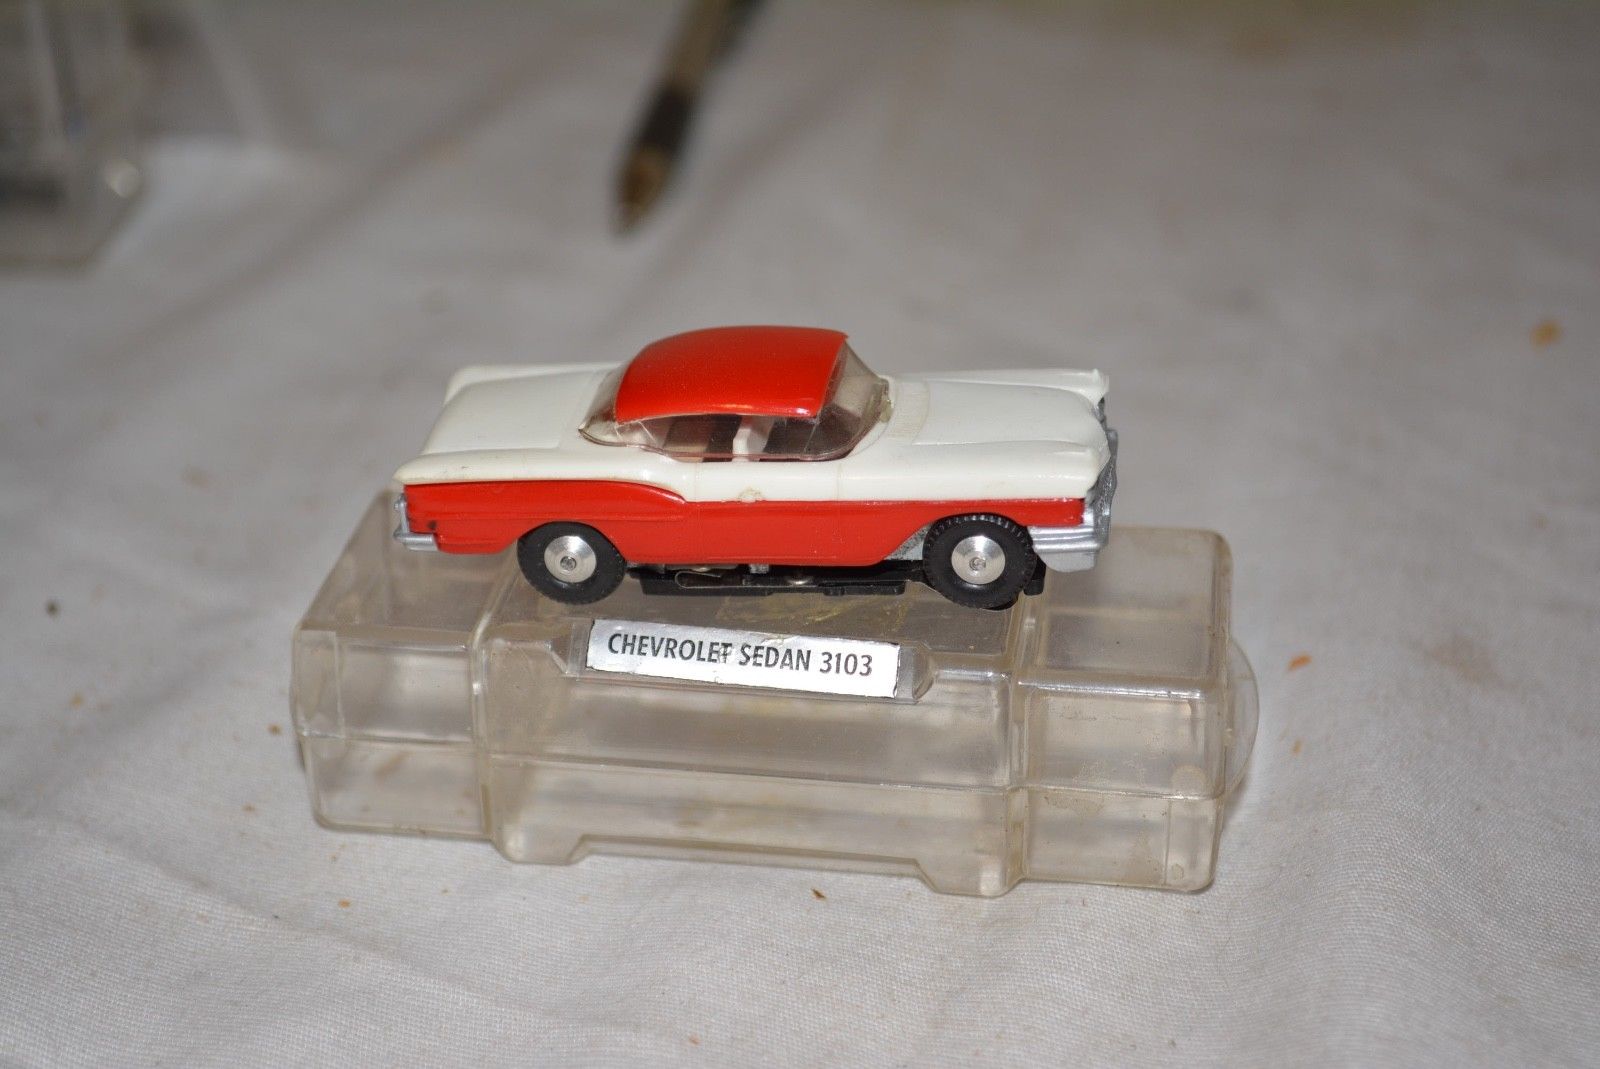 achat et vente de voiture miniature sur ebay